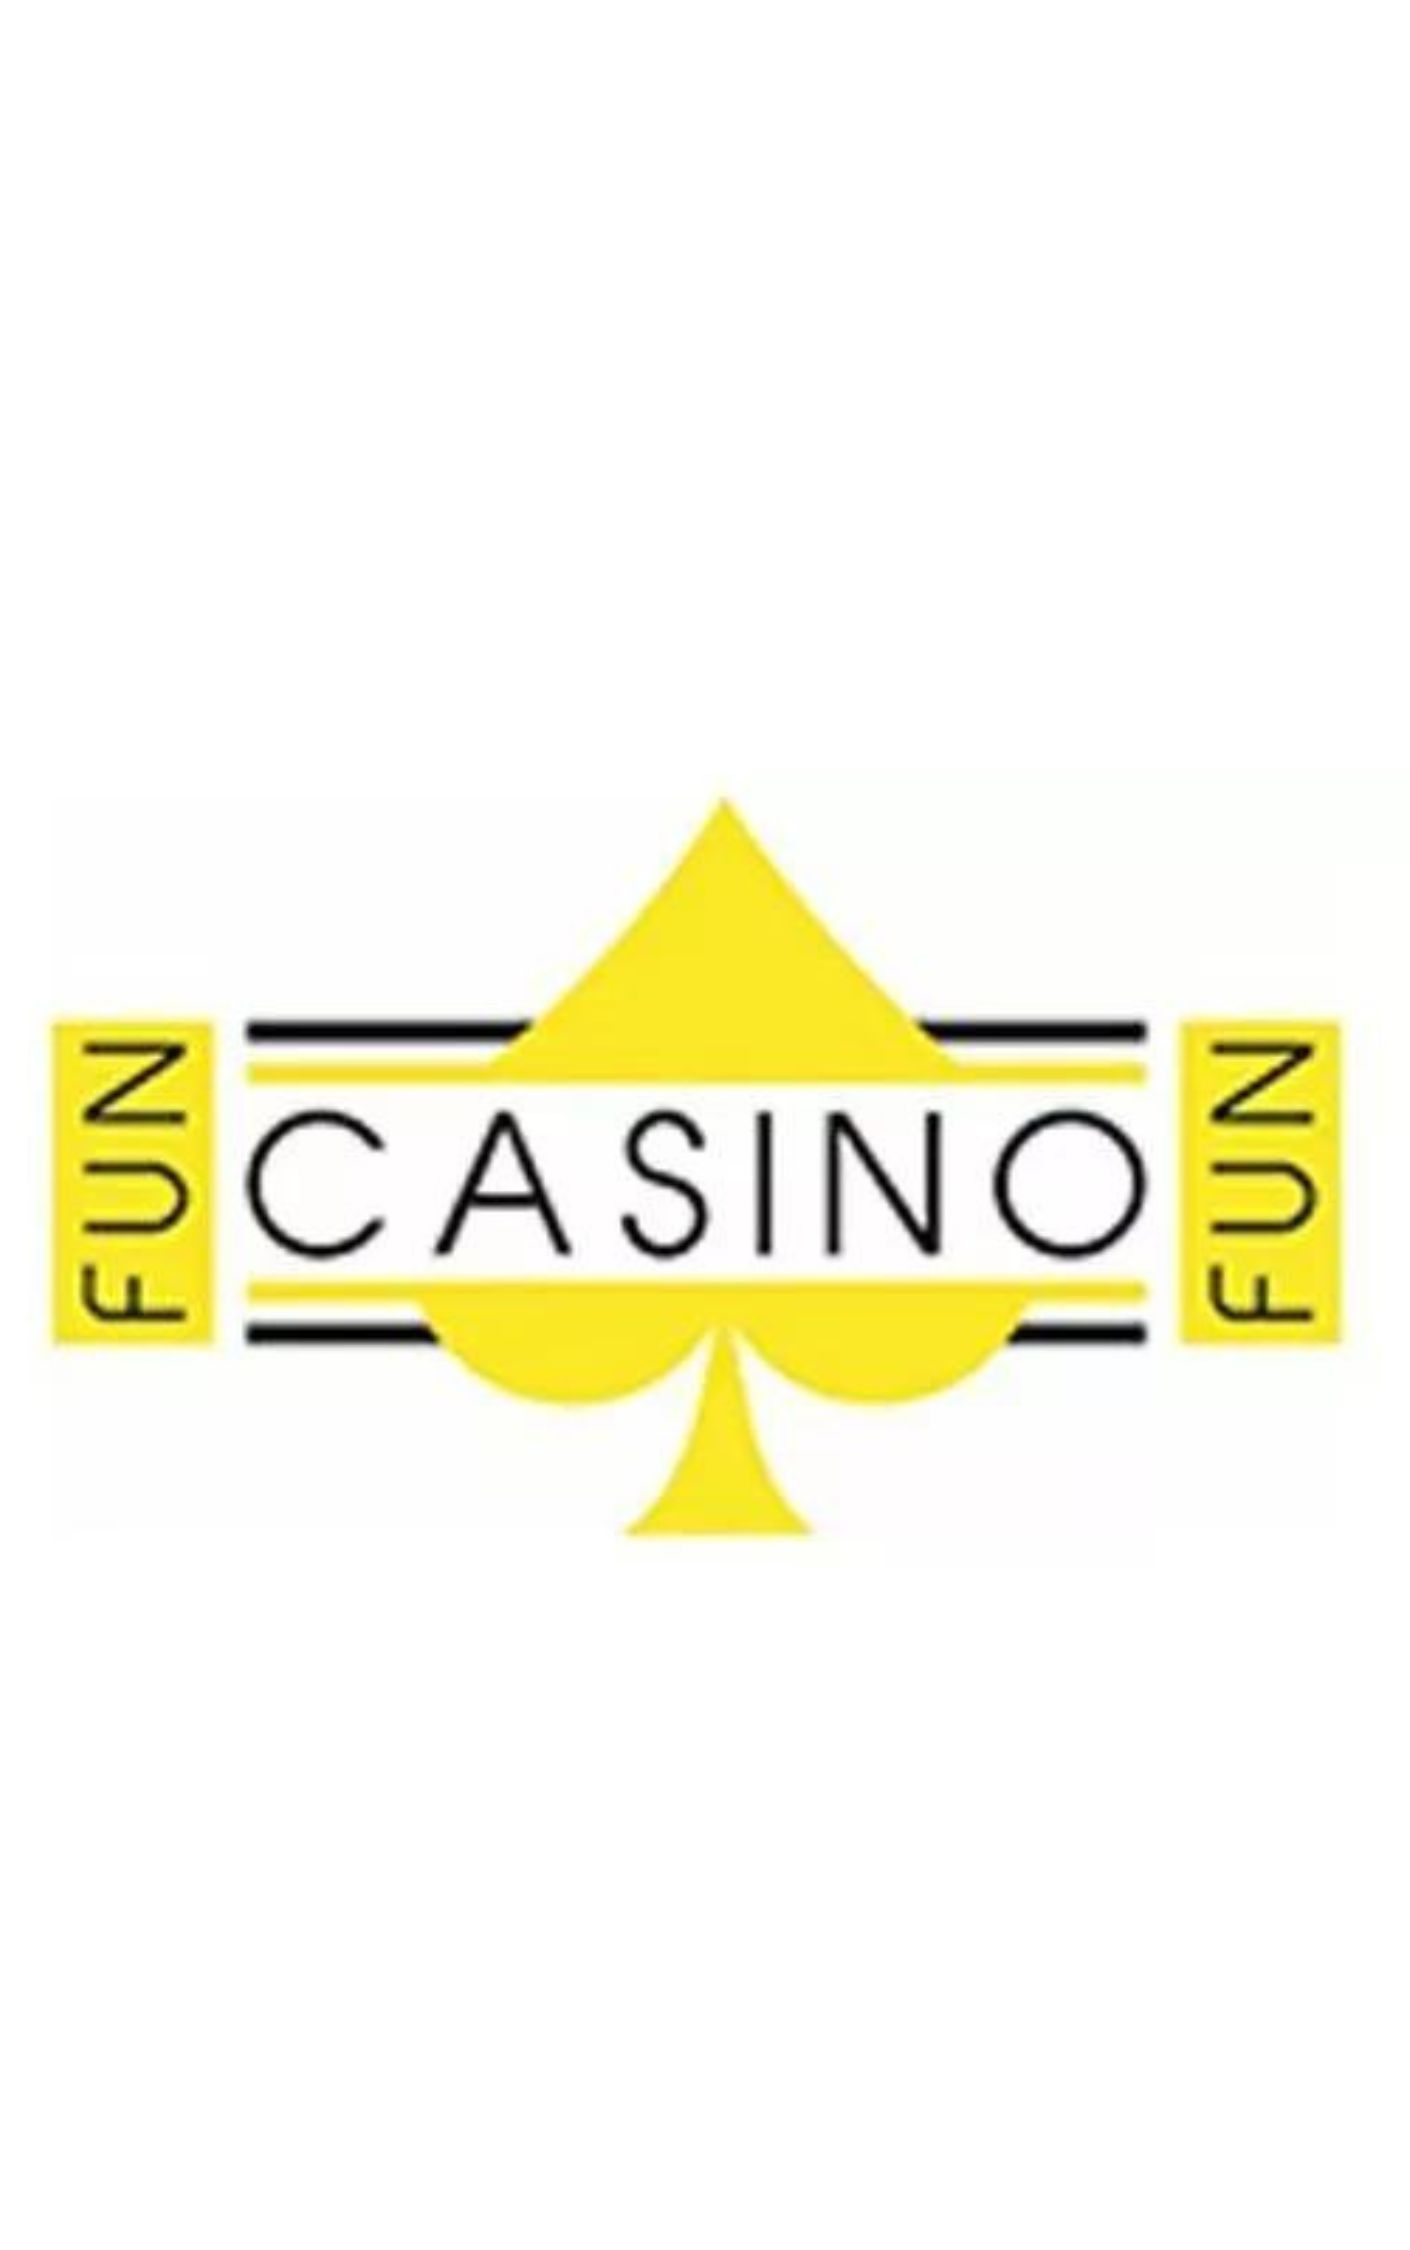 Fun CasinoFun